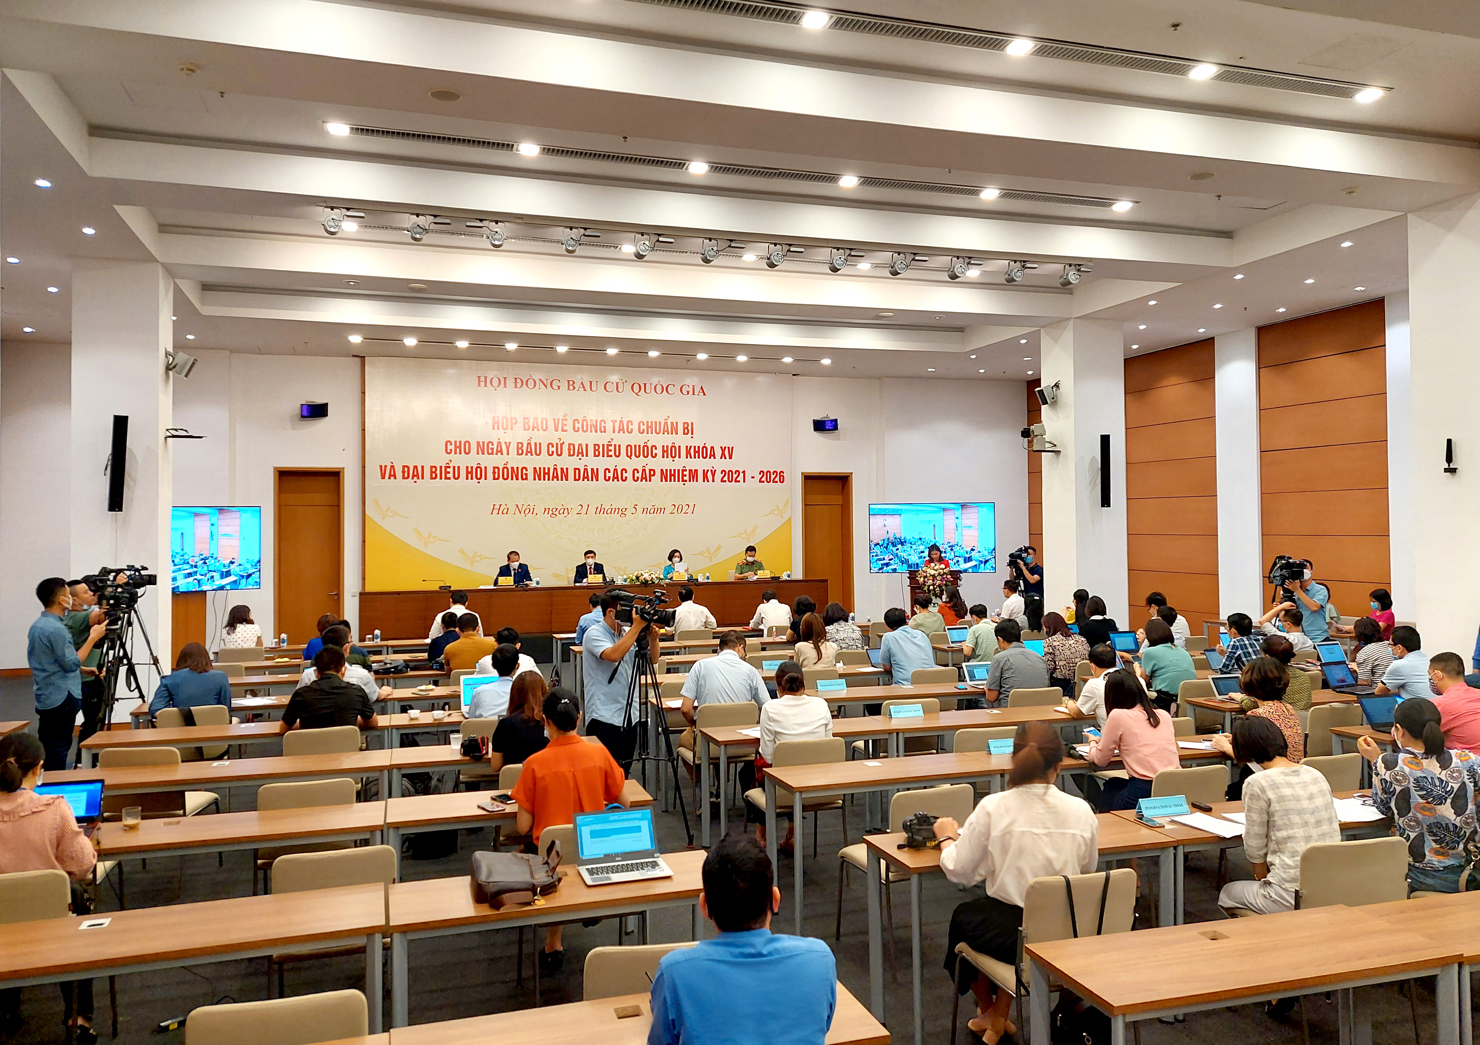 Chiều 21/5, Hội đồng Bầu cử Quốc gia tổ chức họp báo về công tác chuẩn bị cho nhân dân bầu cử Đại biểu Quốc hội khóa XV và đại biểu HĐND các cấp nhiệm kỳ 2021-2026.